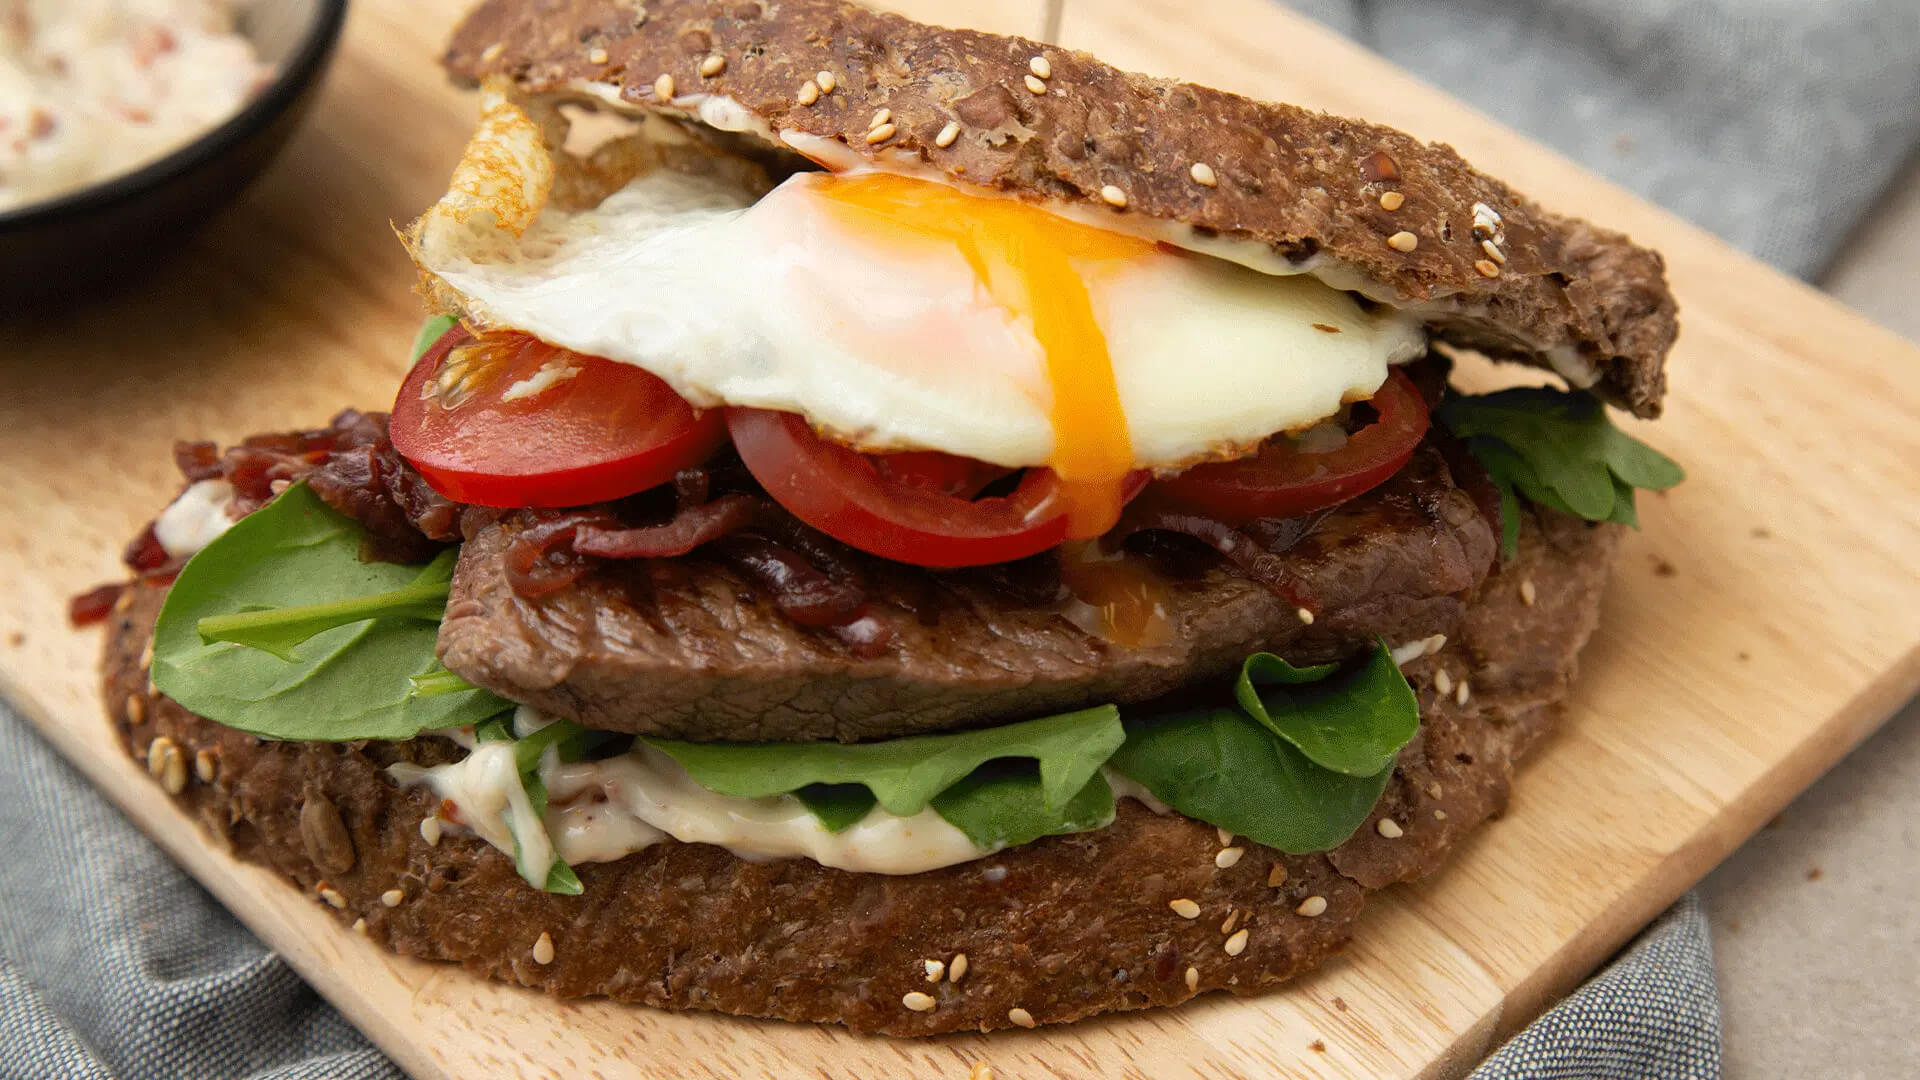 Bánh mì sandwich thịt bò và trứng gà cung cấp nguồn protein chất lượng cao cho buổi sáng.